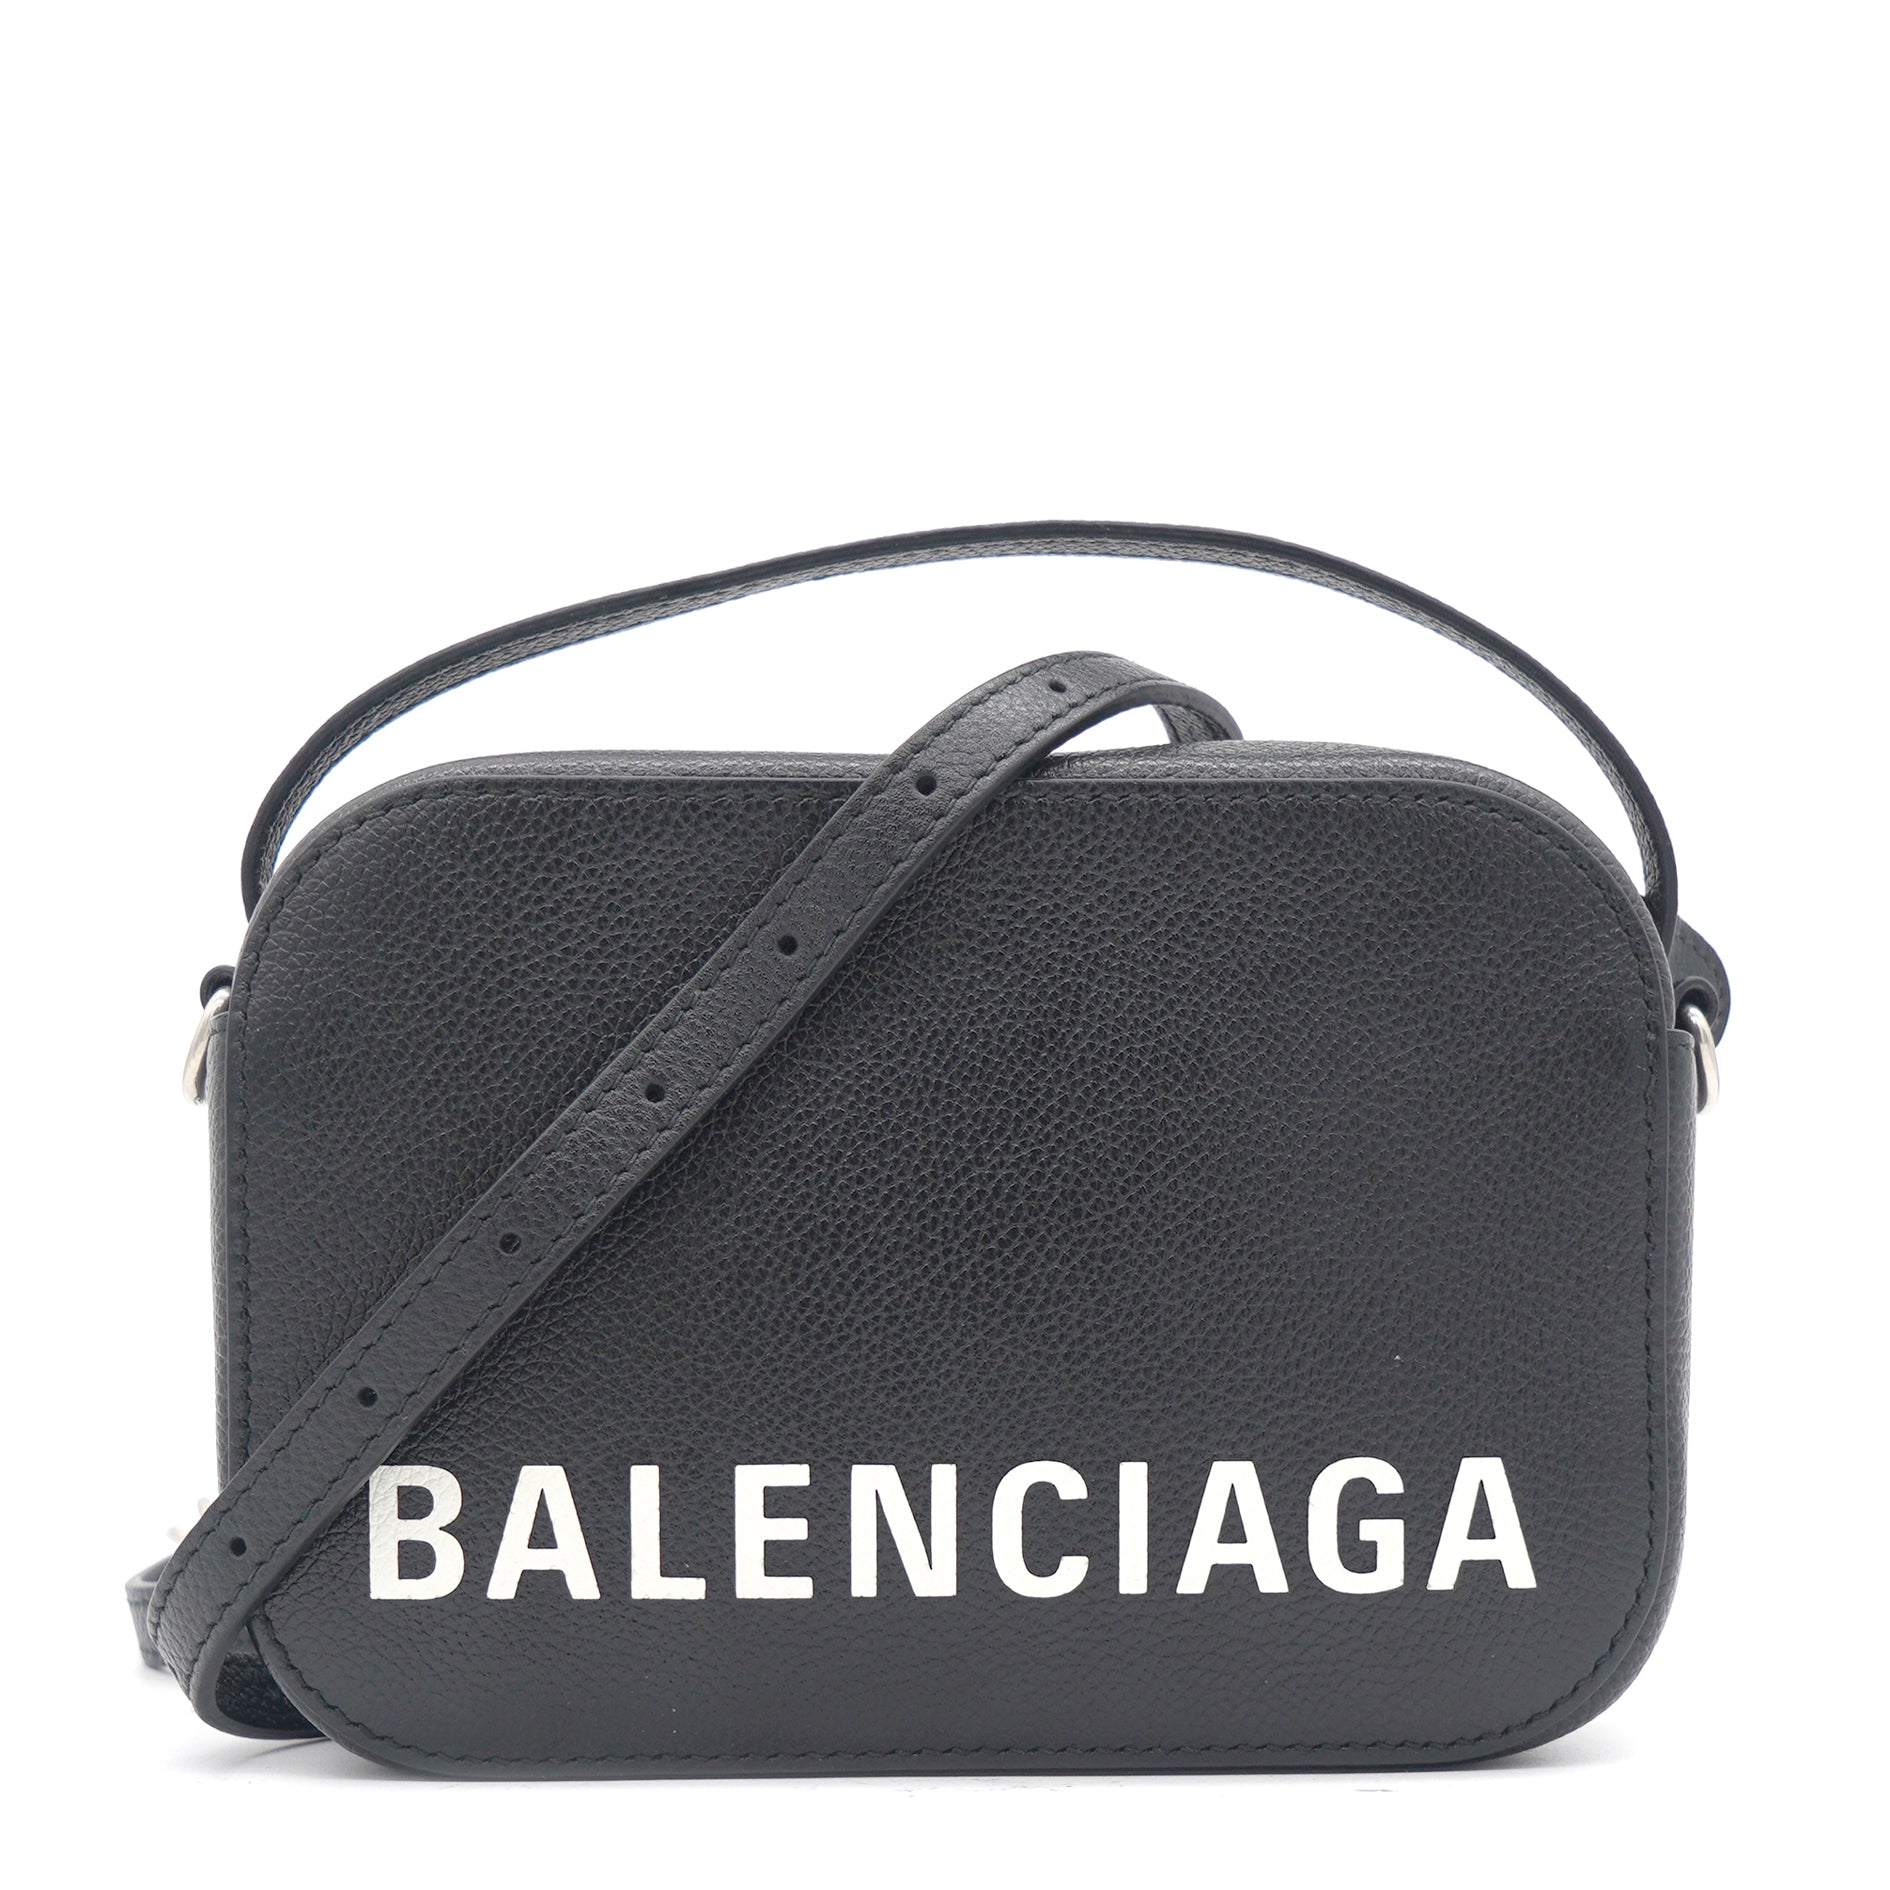 Balenciaga Bags for Women  Shop Now on FARFETCH